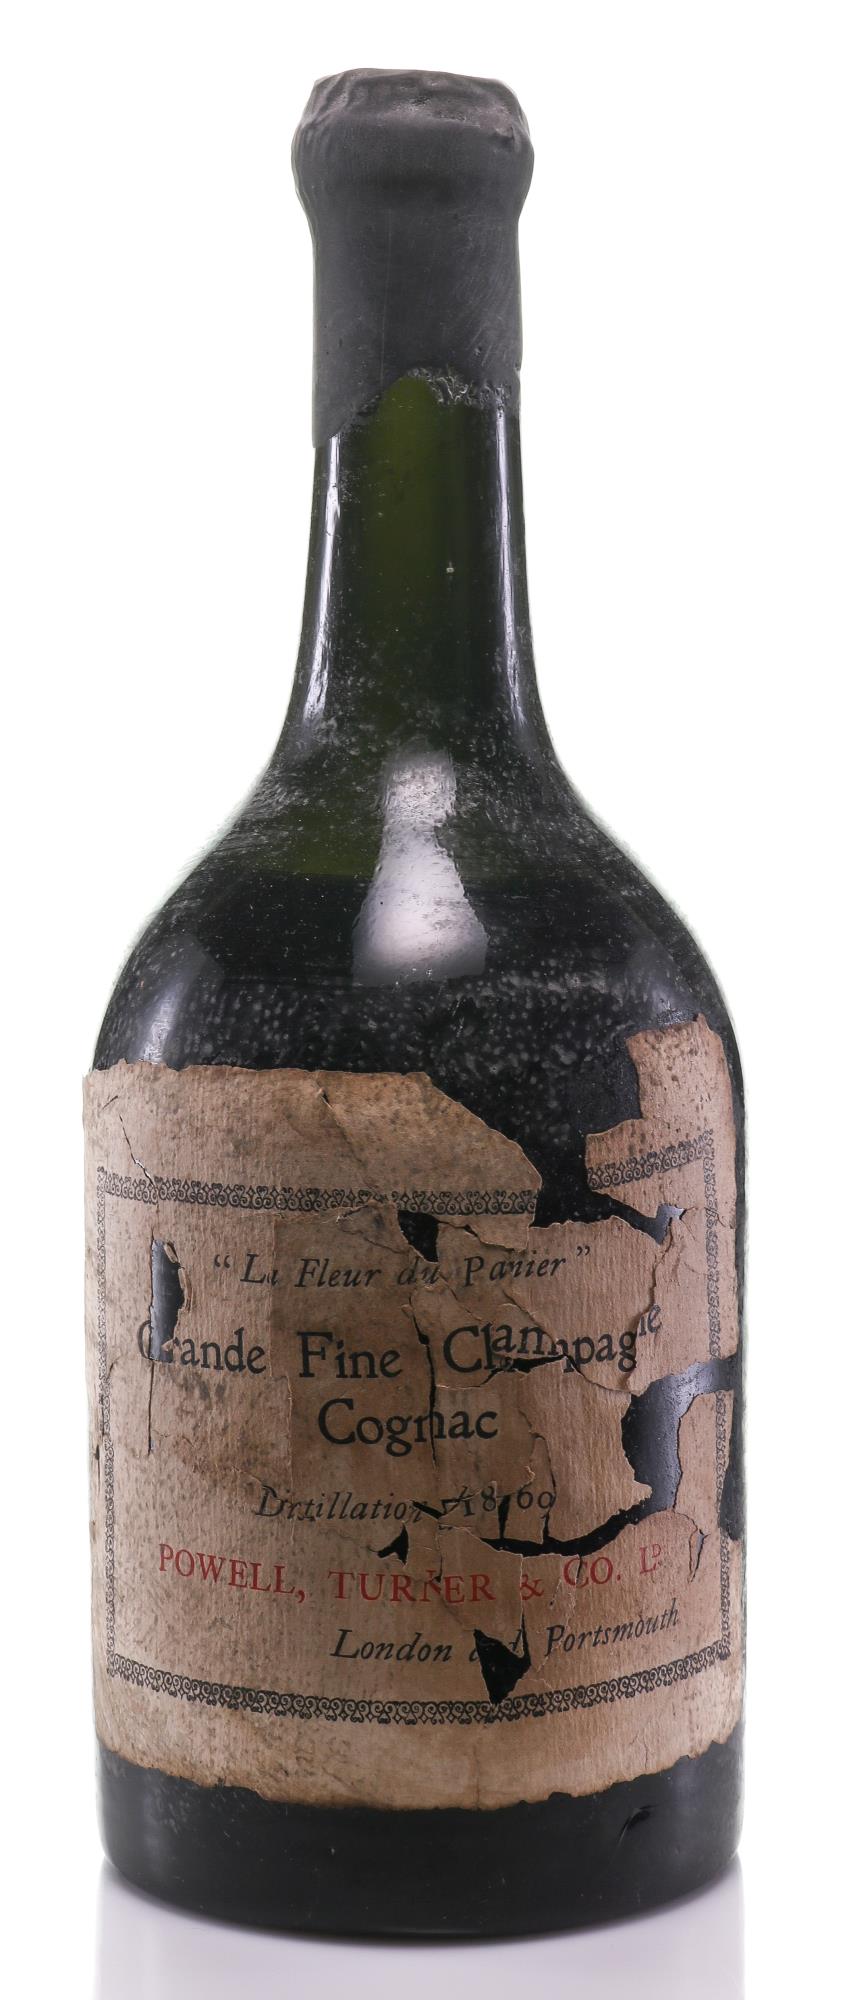 Powell Turner & Co. Grande Fine Champagne 1869 Champagne Cognac Le Fleur du Panier Vintage - Rue Pinard